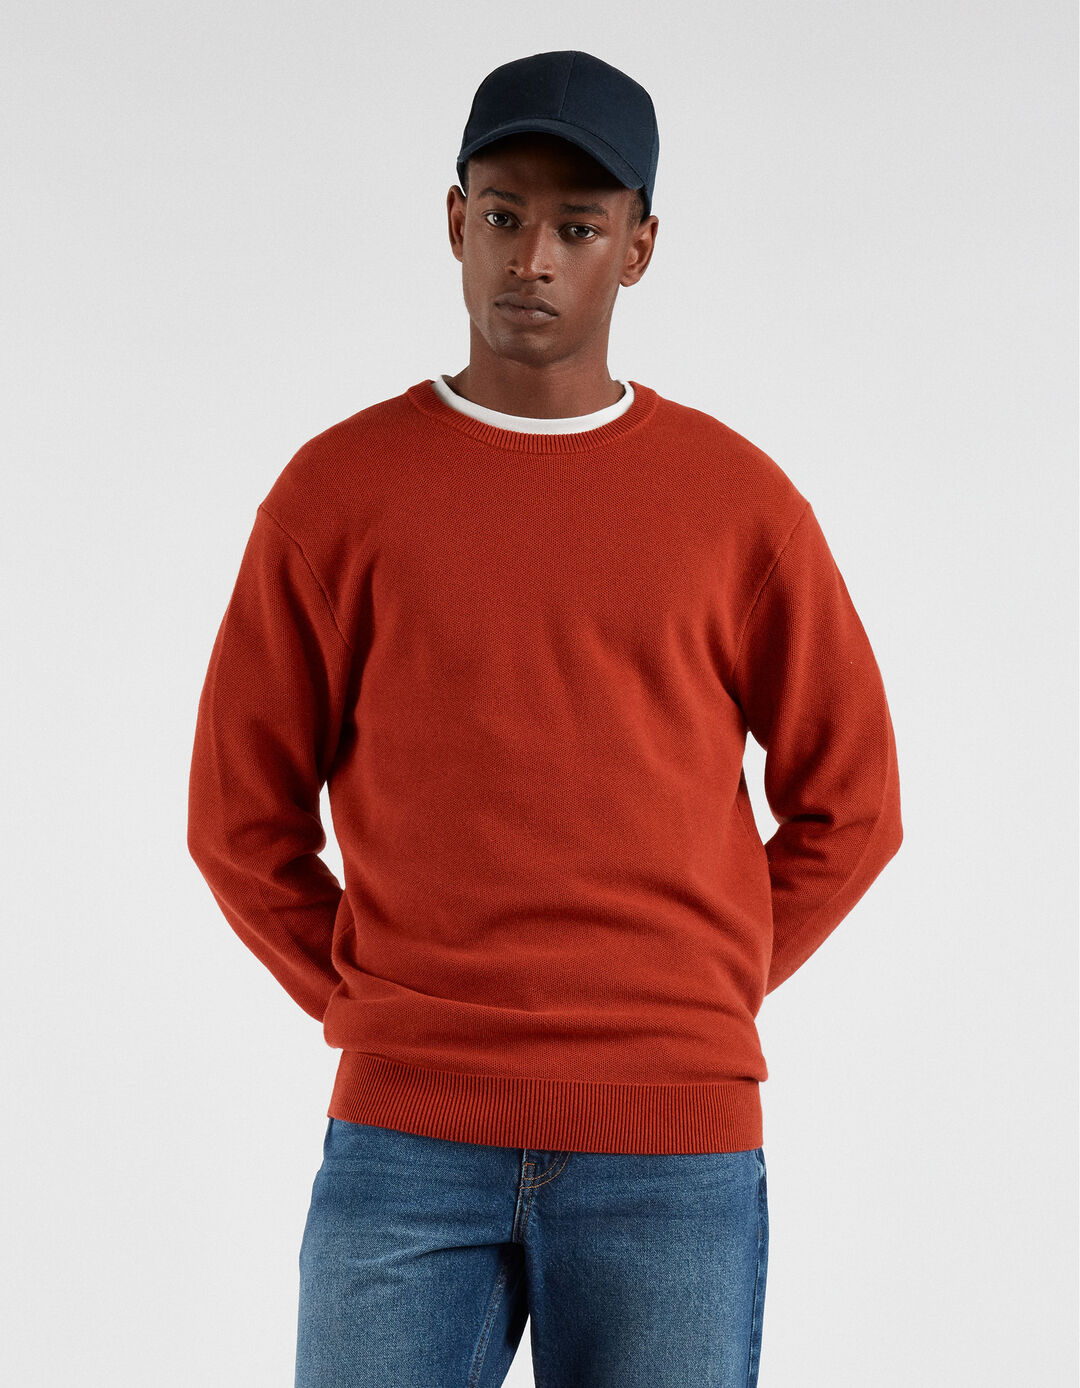 Textured Knit Sweater, Men, Dark Orange